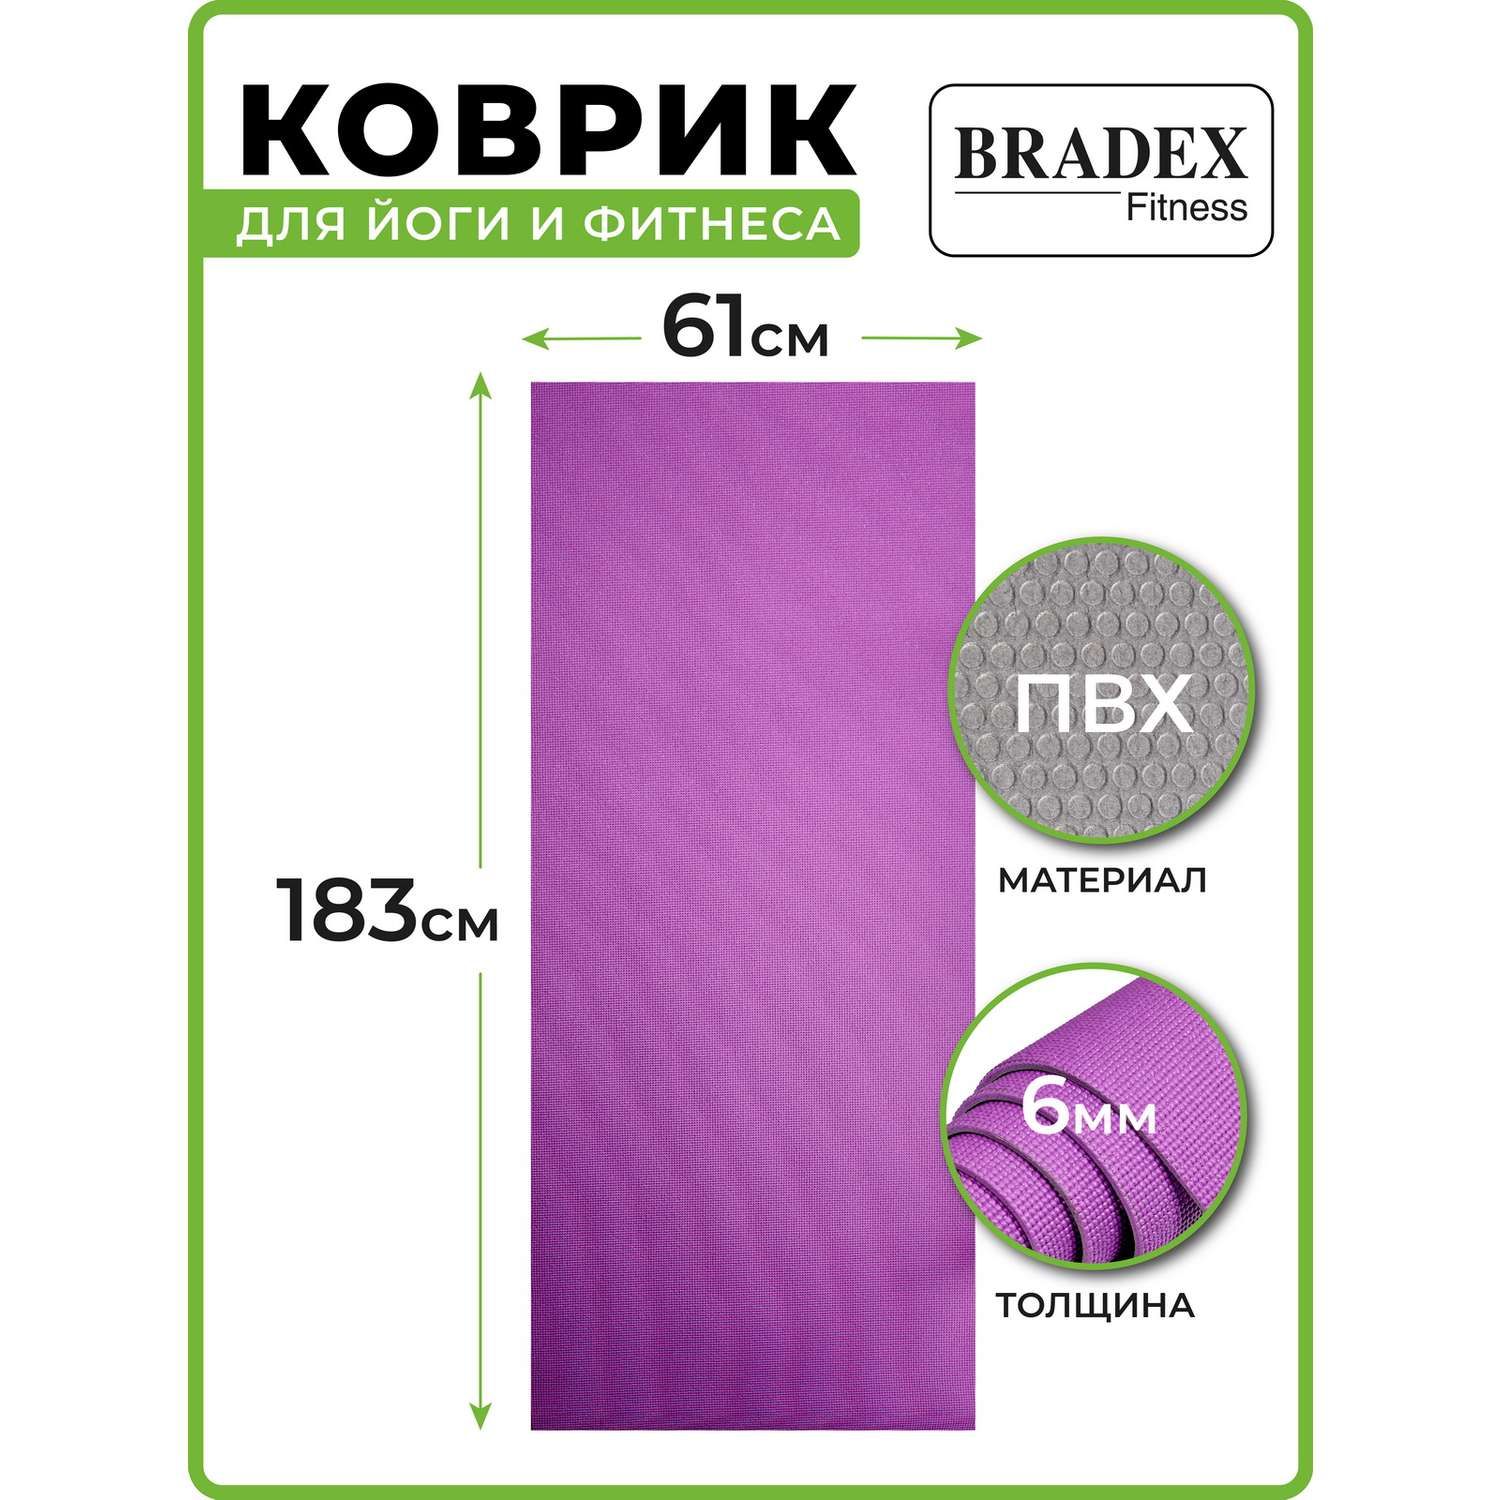 Коврик для йоги и фитнеса Bradex двухслойный фиолетовый 183х61 см - фото 3